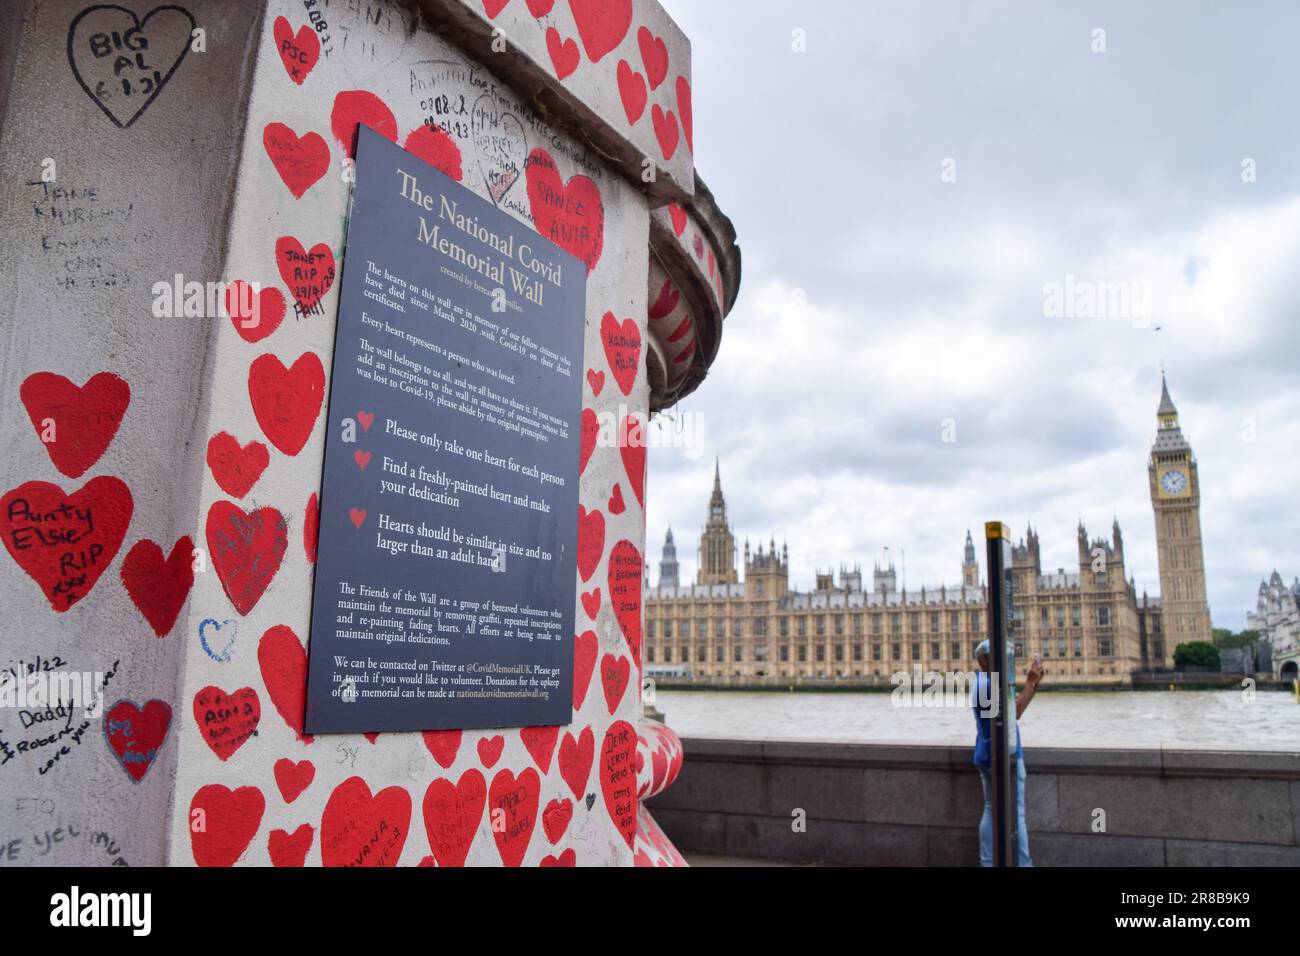 Eine allgemeine Ansicht des National Covid Memorial Wall Signs und der Houses of Parliament während der britischen Covid-19-Untersuchung. Derzeit wird untersucht, wie das Vereinigte Königreich mit der Coronavirus-Pandemie umgeht. Stockfoto